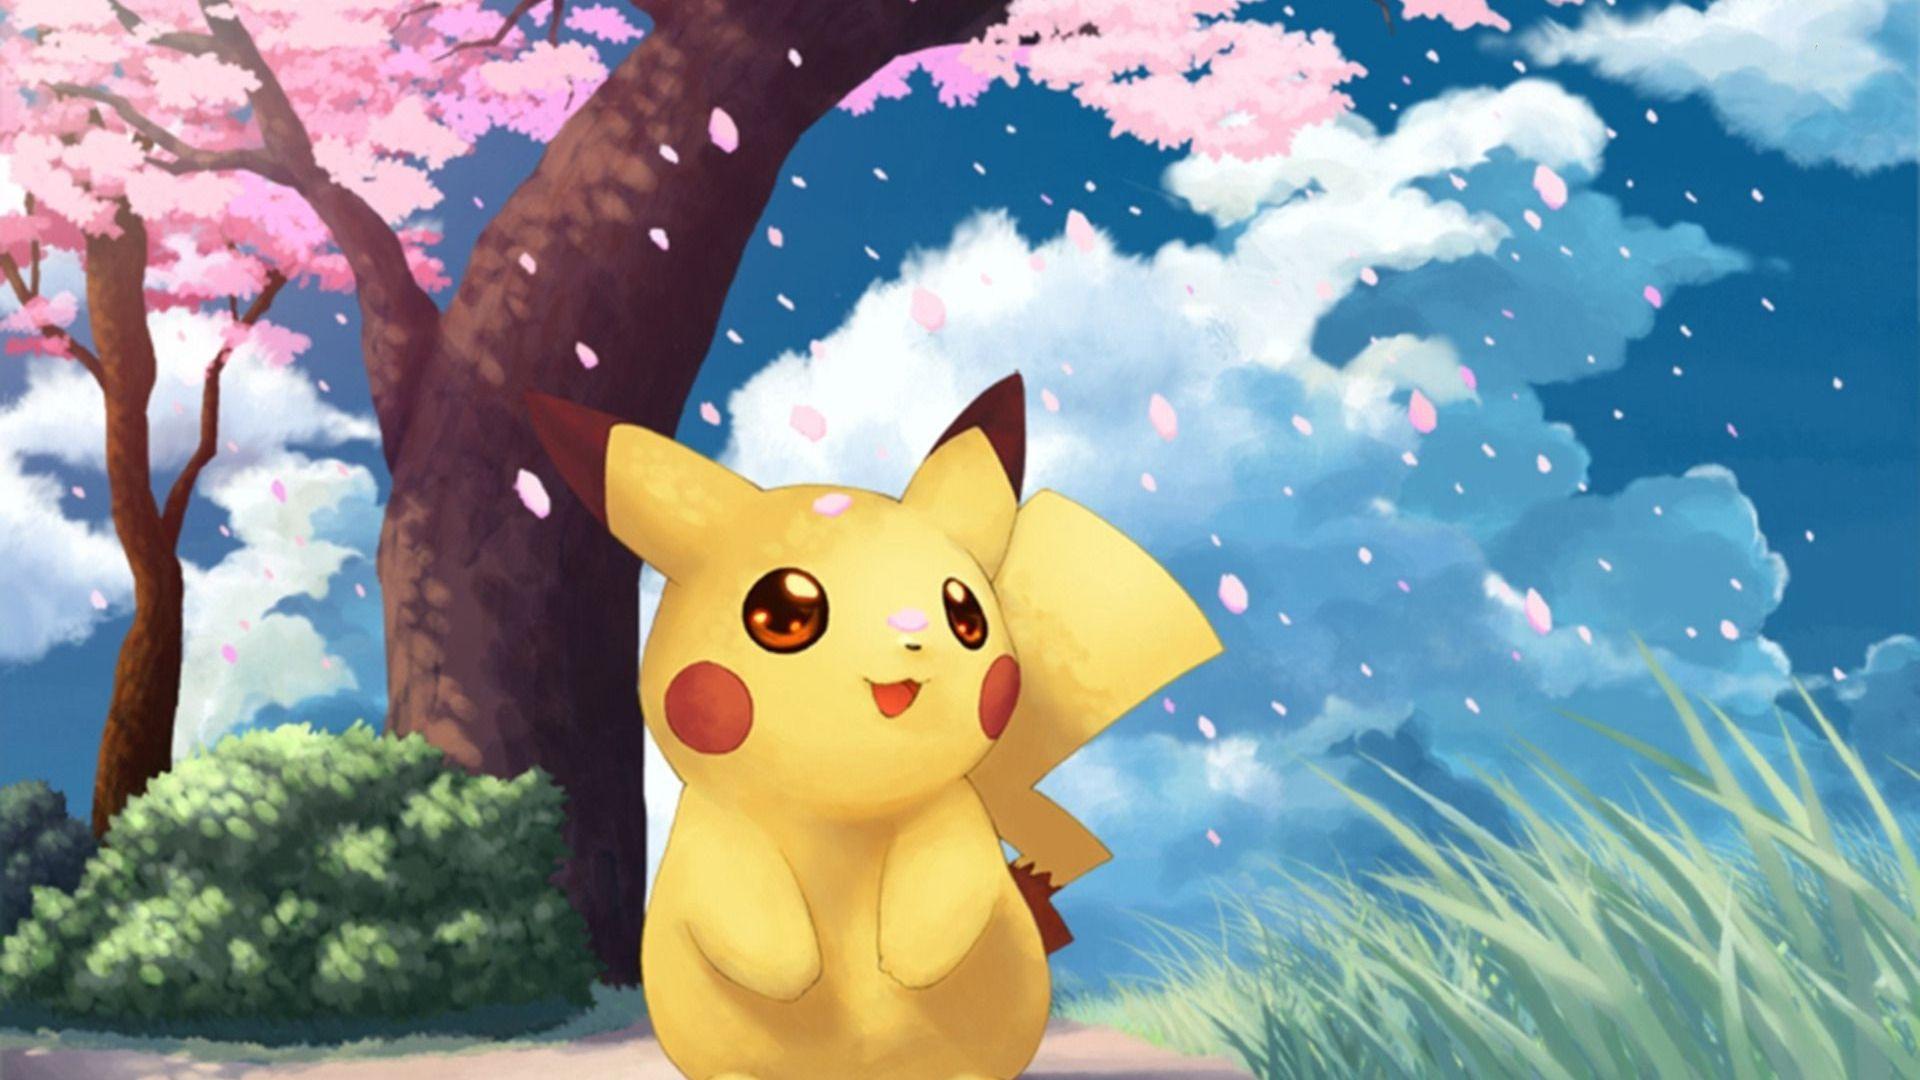 Pokemon is love pokemon is life  Cute pokemon wallpaper Pikachu Cute  pikachu